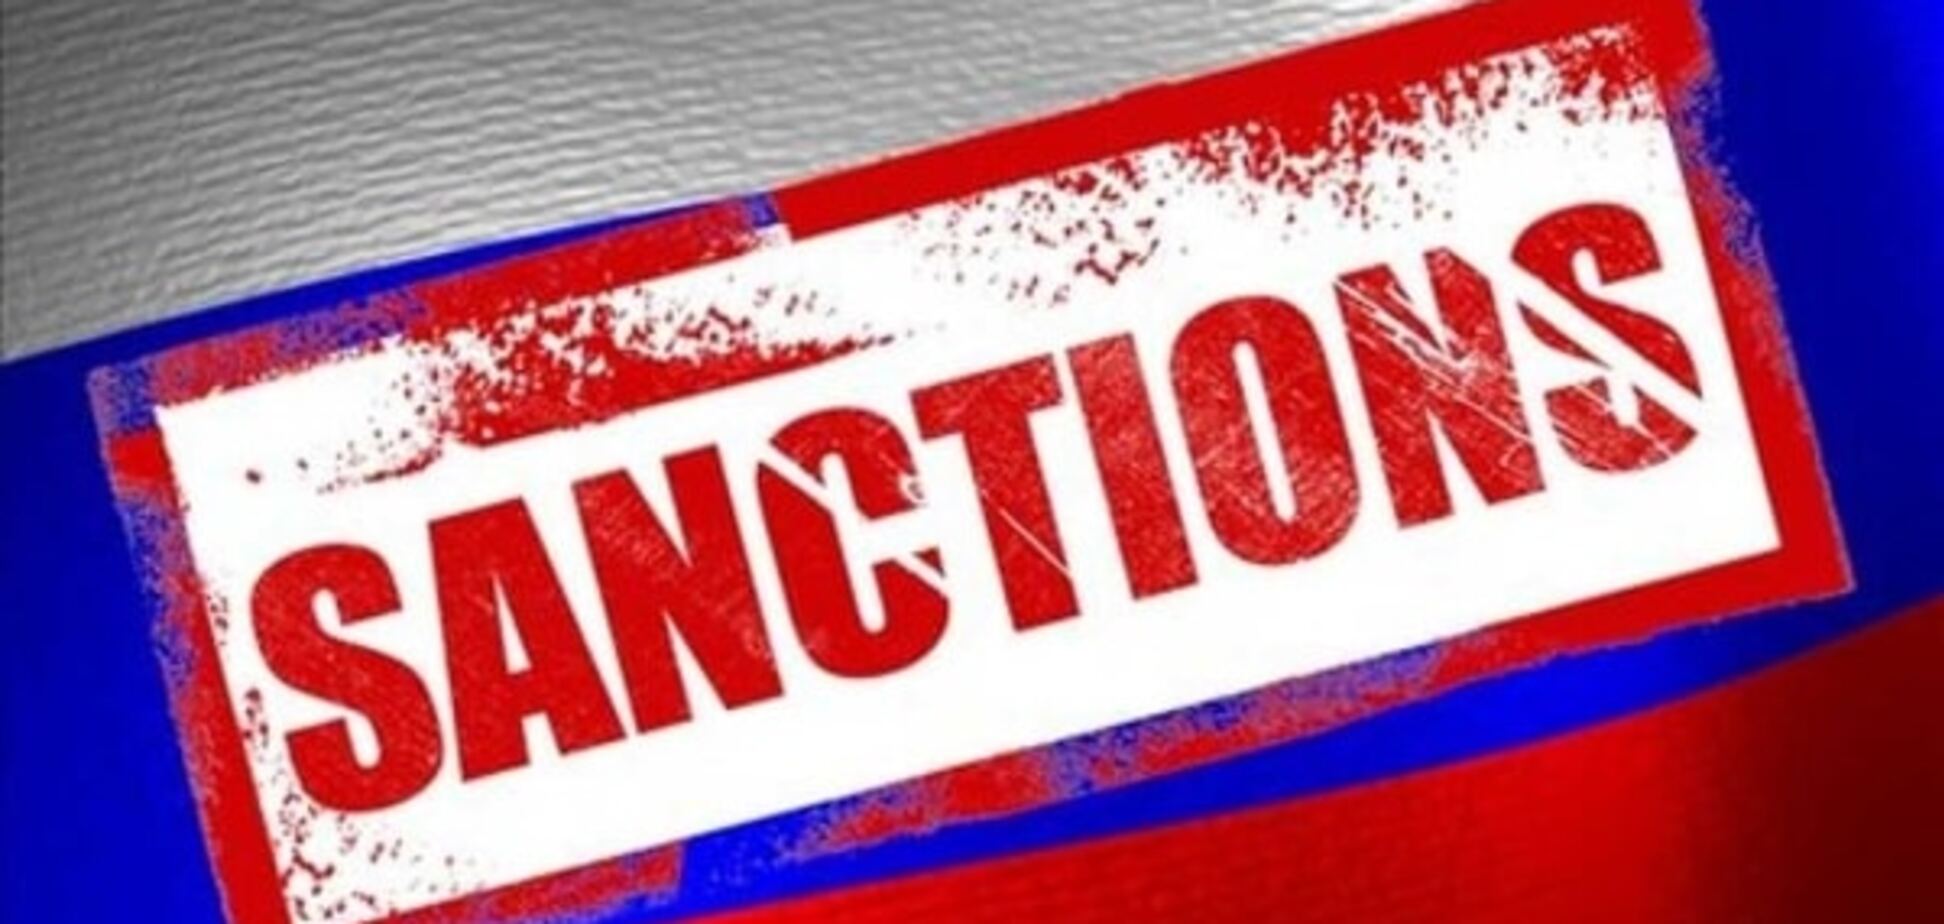 Портников: путинский режим использует террор, чтобы добиться отмены санкций